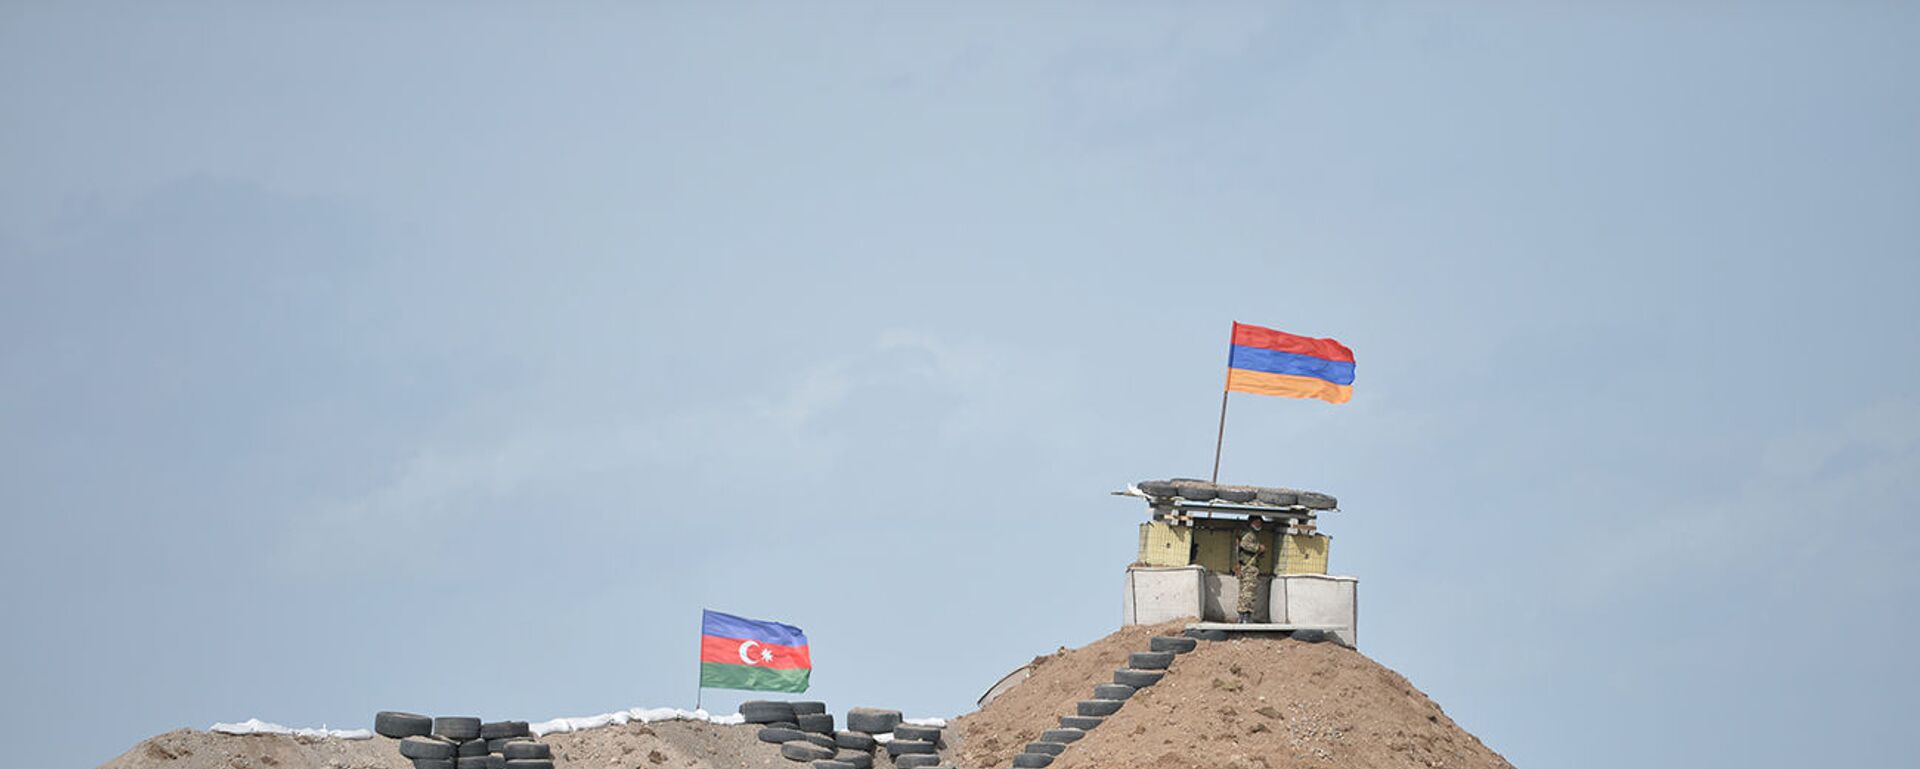 Военные посты на армянсо-азербайджанской границе - Sputnik Արմենիա, 1920, 31.08.2021